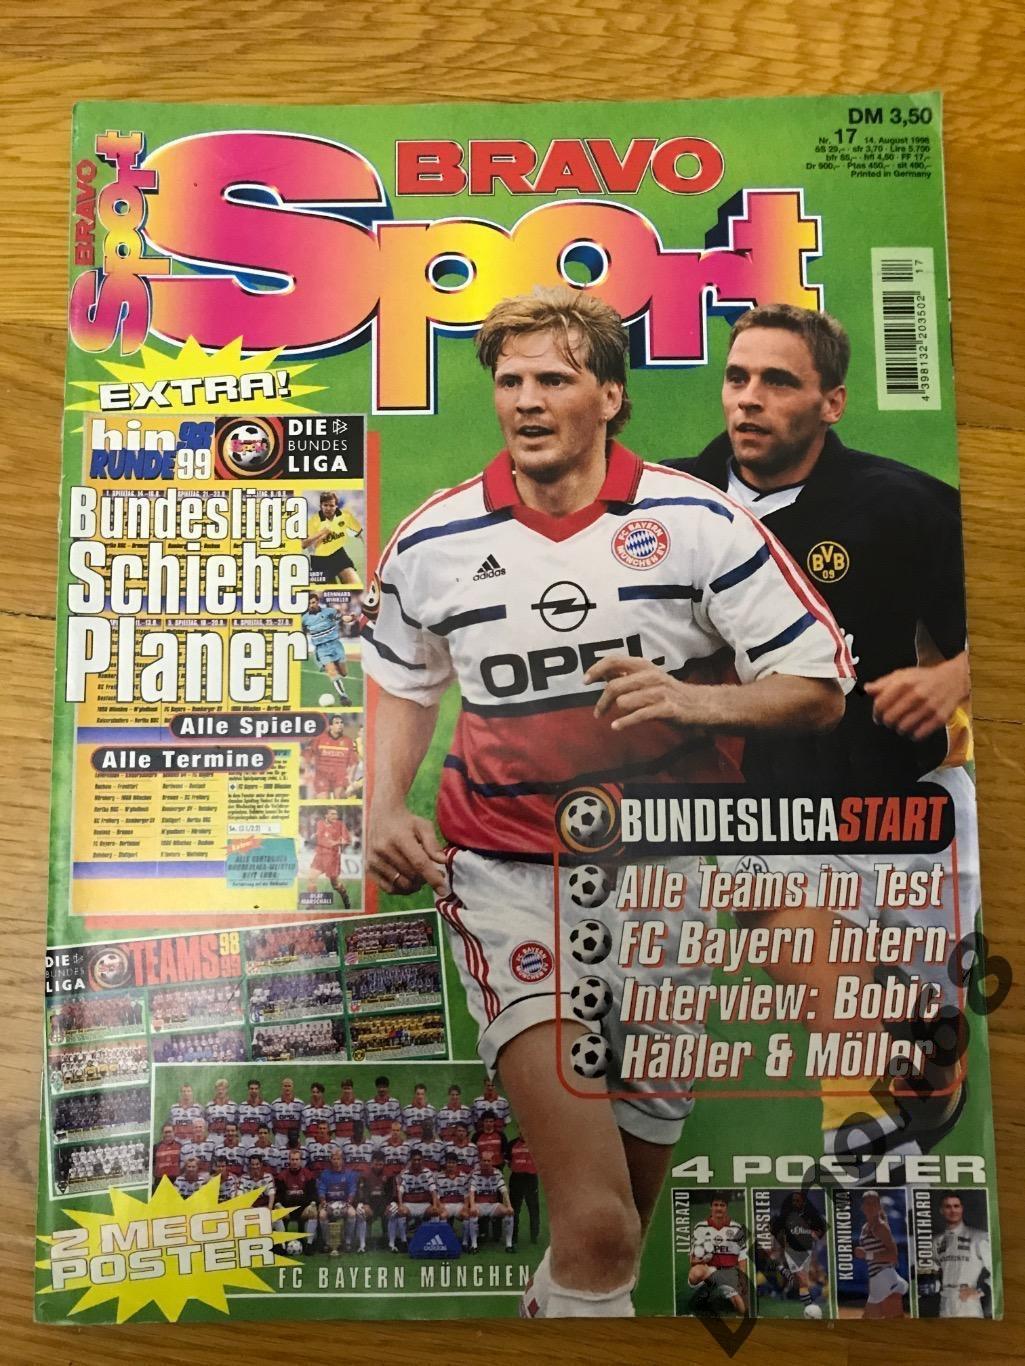 BRAVO Sport 1998г журнал целый с большим постером